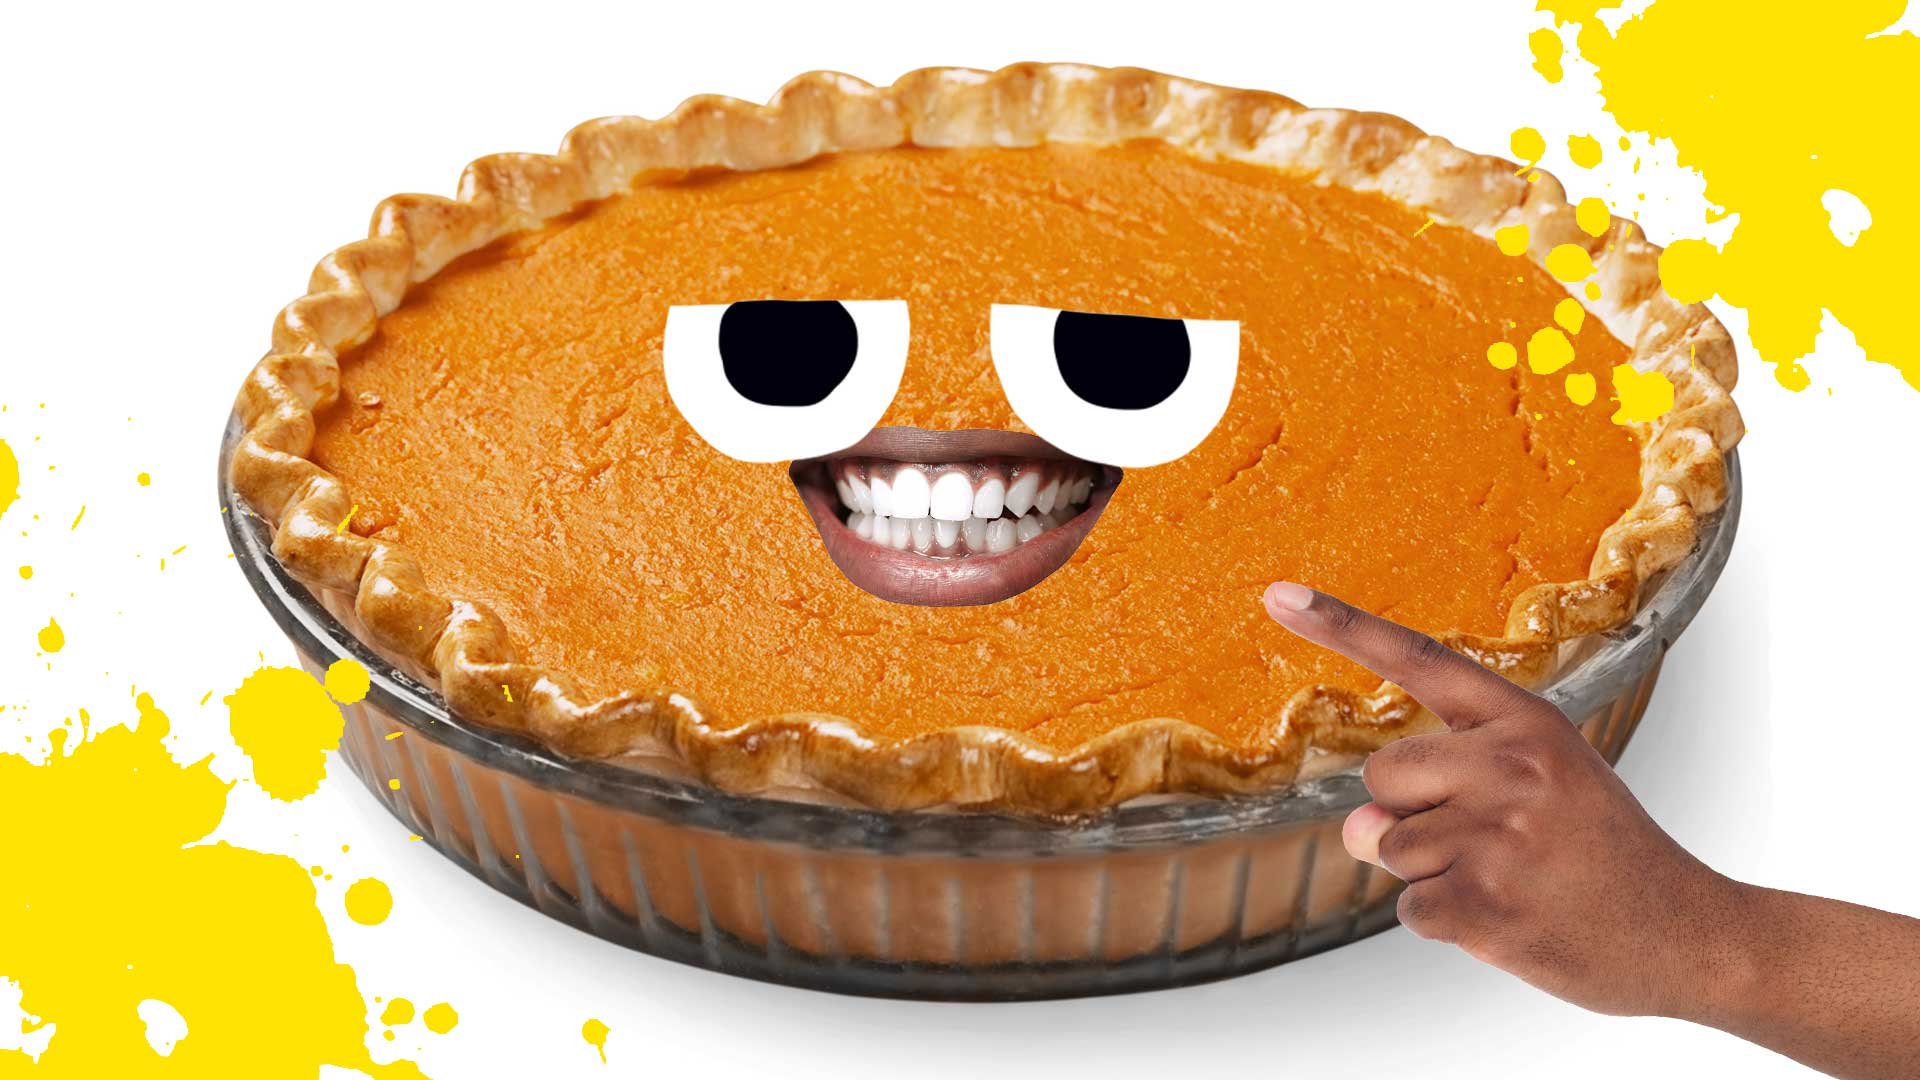 A pumpkin pie